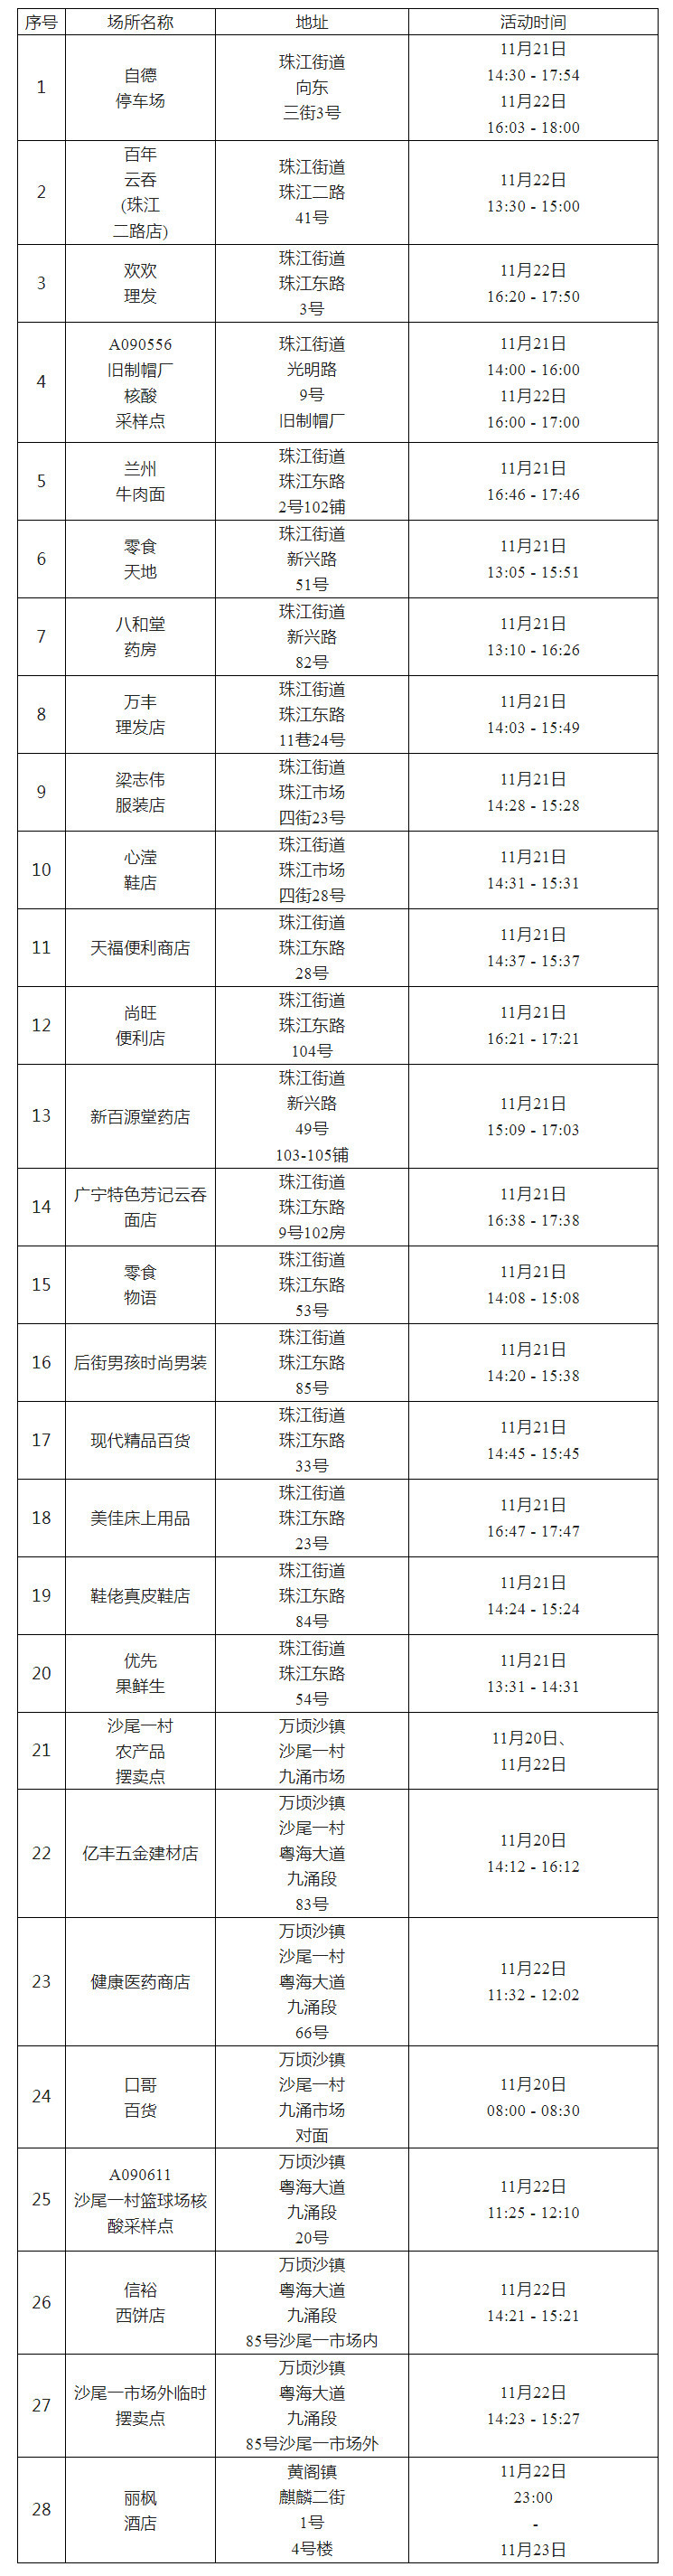 广州南沙通报涉疫重点场所 调整部分区域临时管控措施